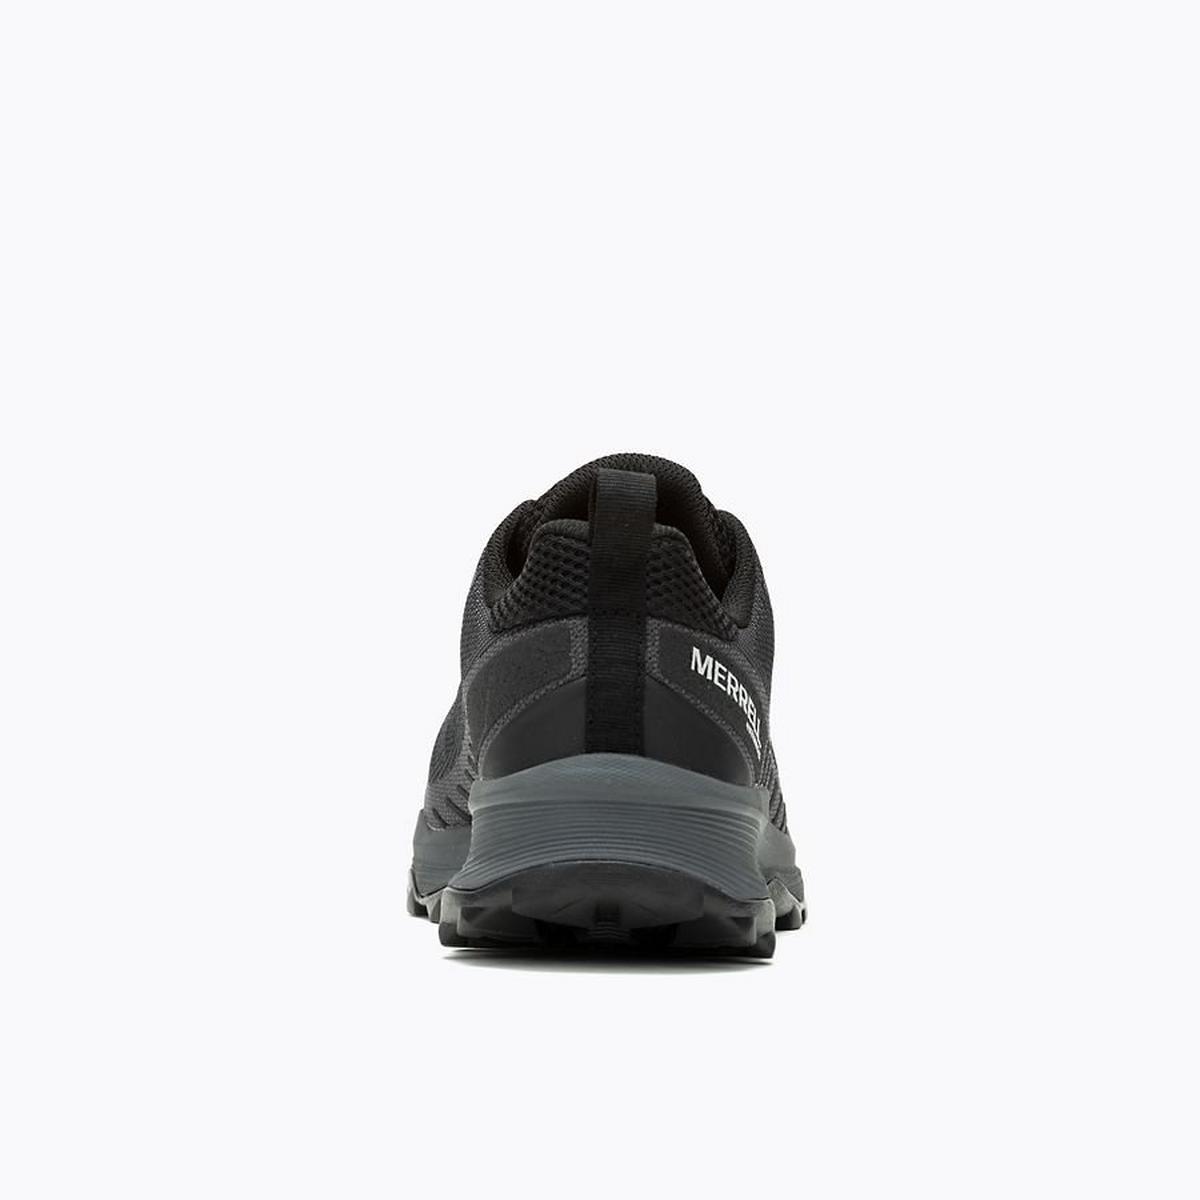 Merrell Men's Speed Eco Waterproof Walking Shoe - Black